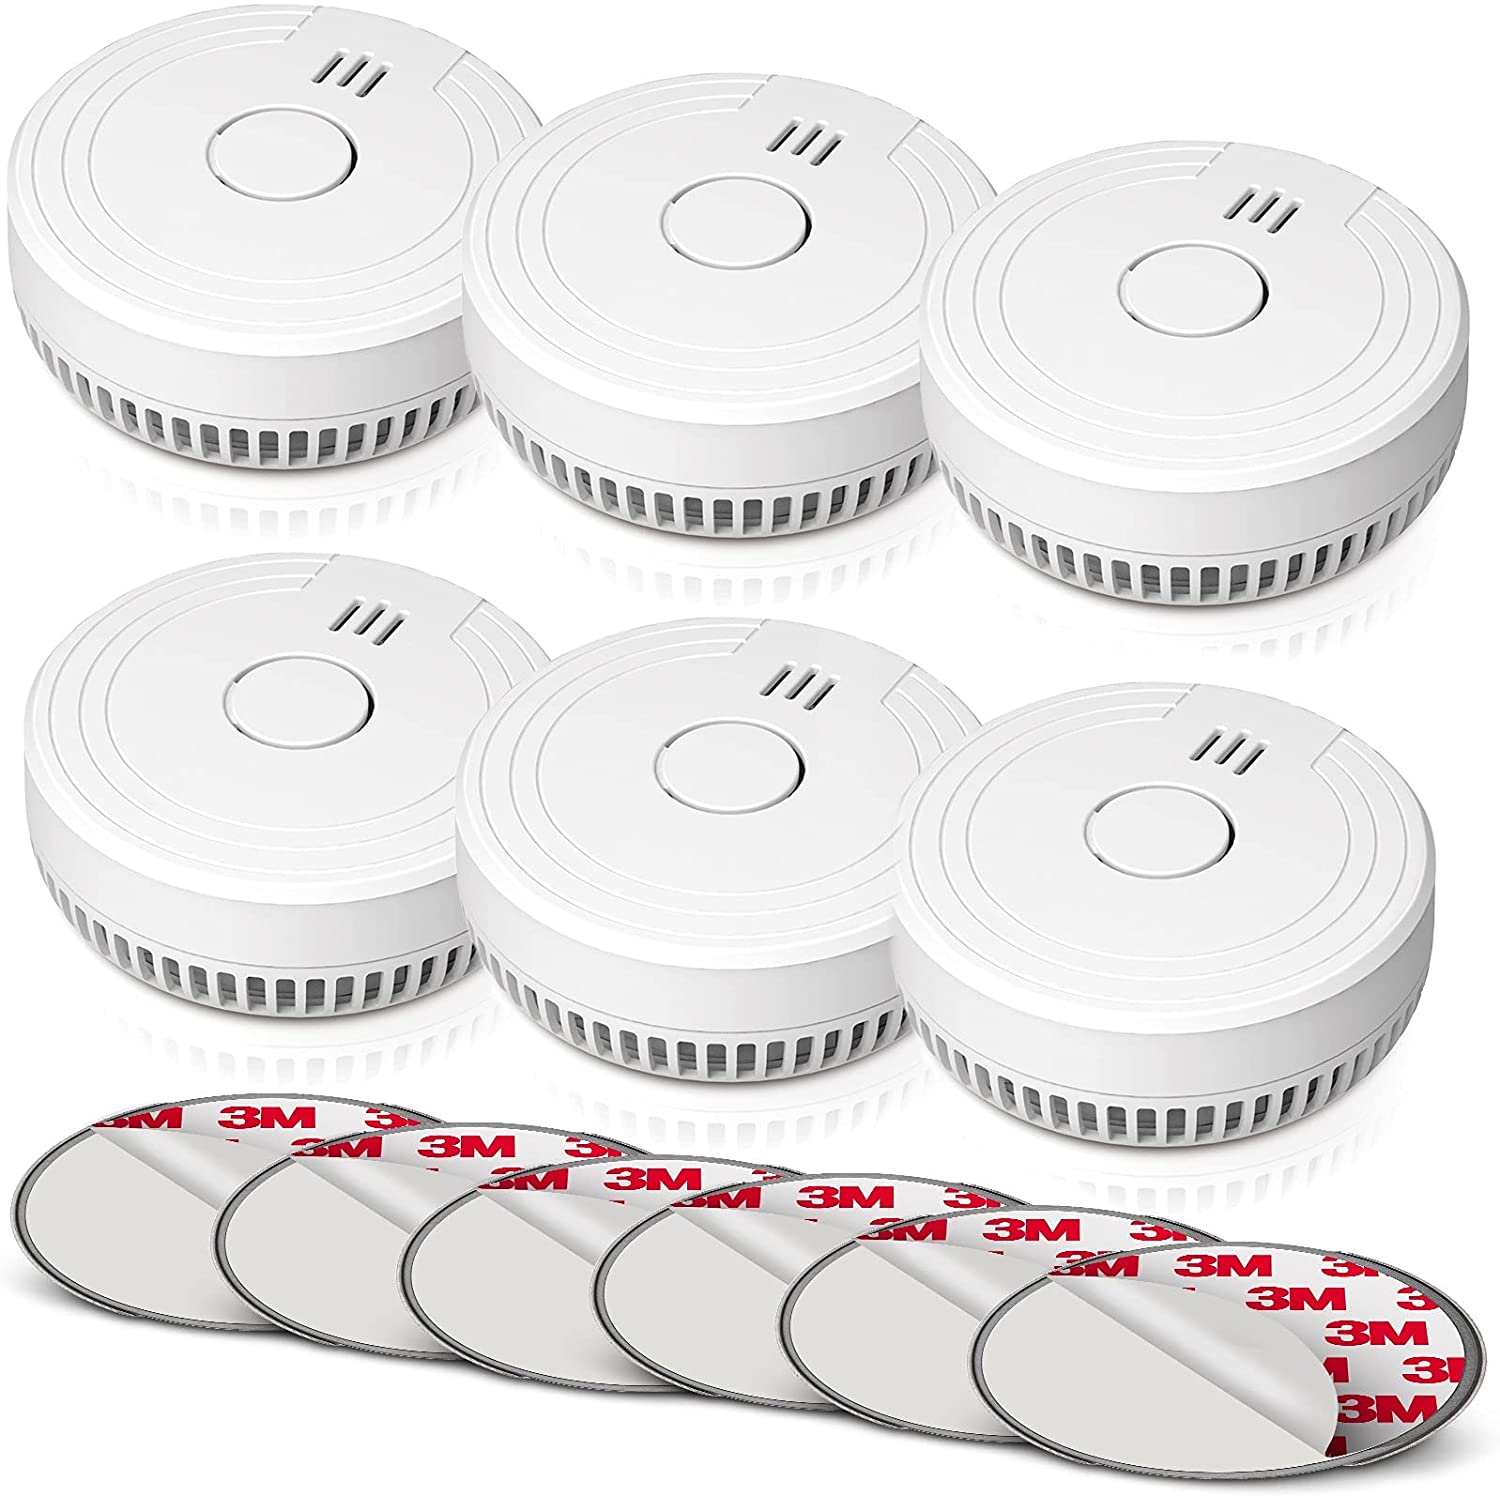 Ecoey Smoke Alarm Six Pack.